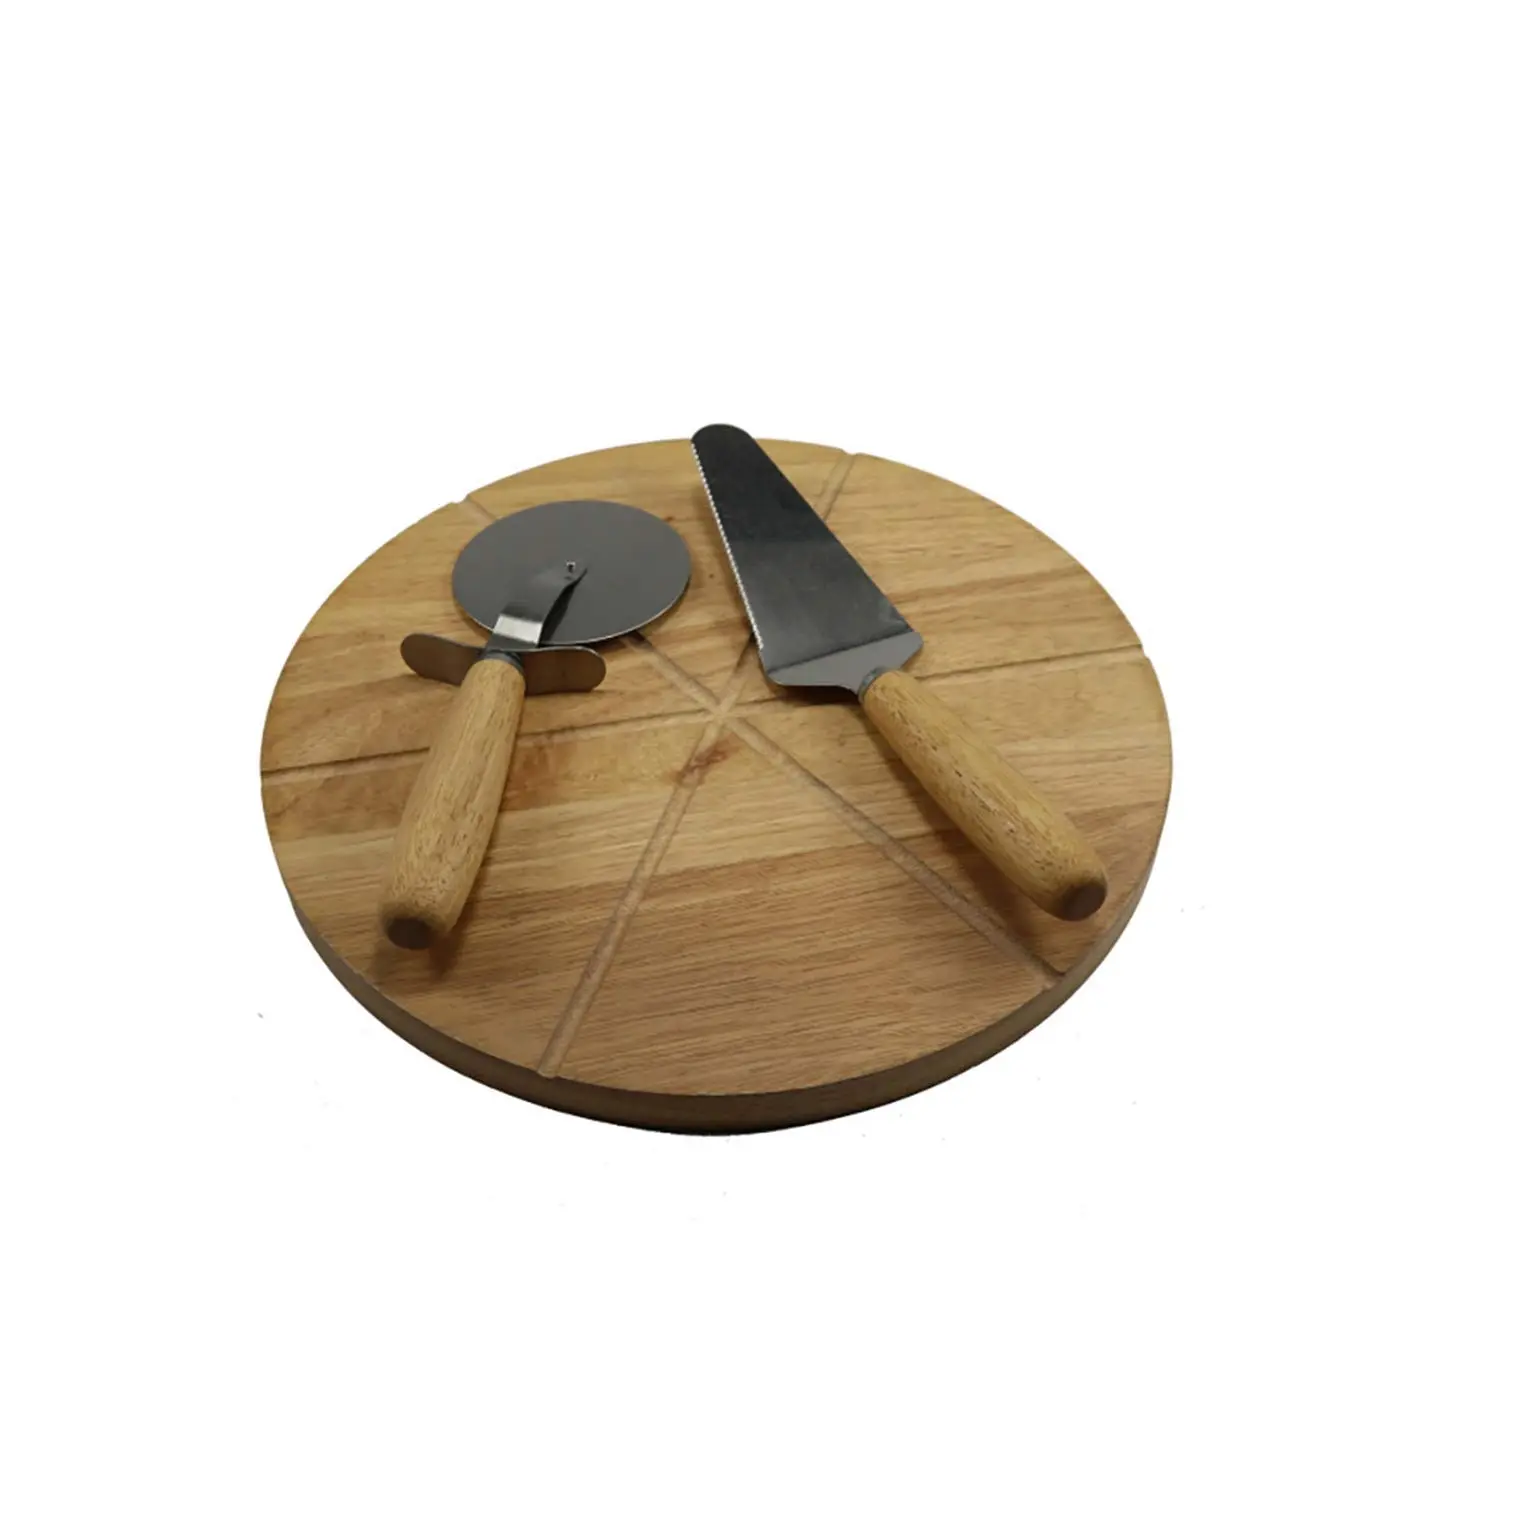 Piring Pizza kayu untuk dapur rumah menggunakan produk terbaik papan potong kayu untuk hotel dan Restoran meja menggunakan papan potong